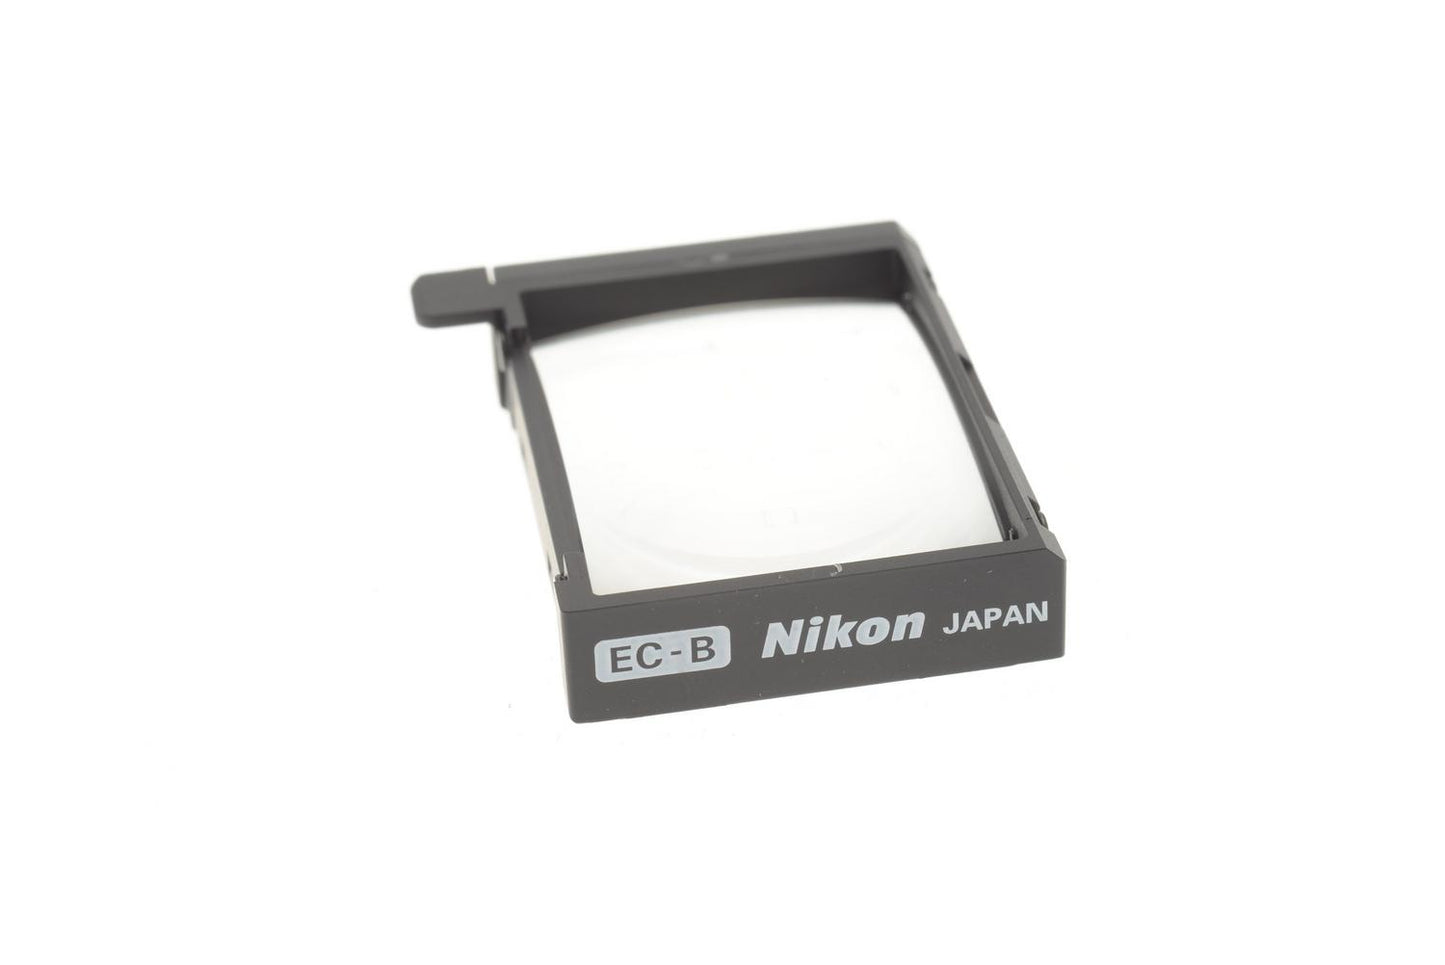 Nikon EC-B Focusing Screen - Accessory